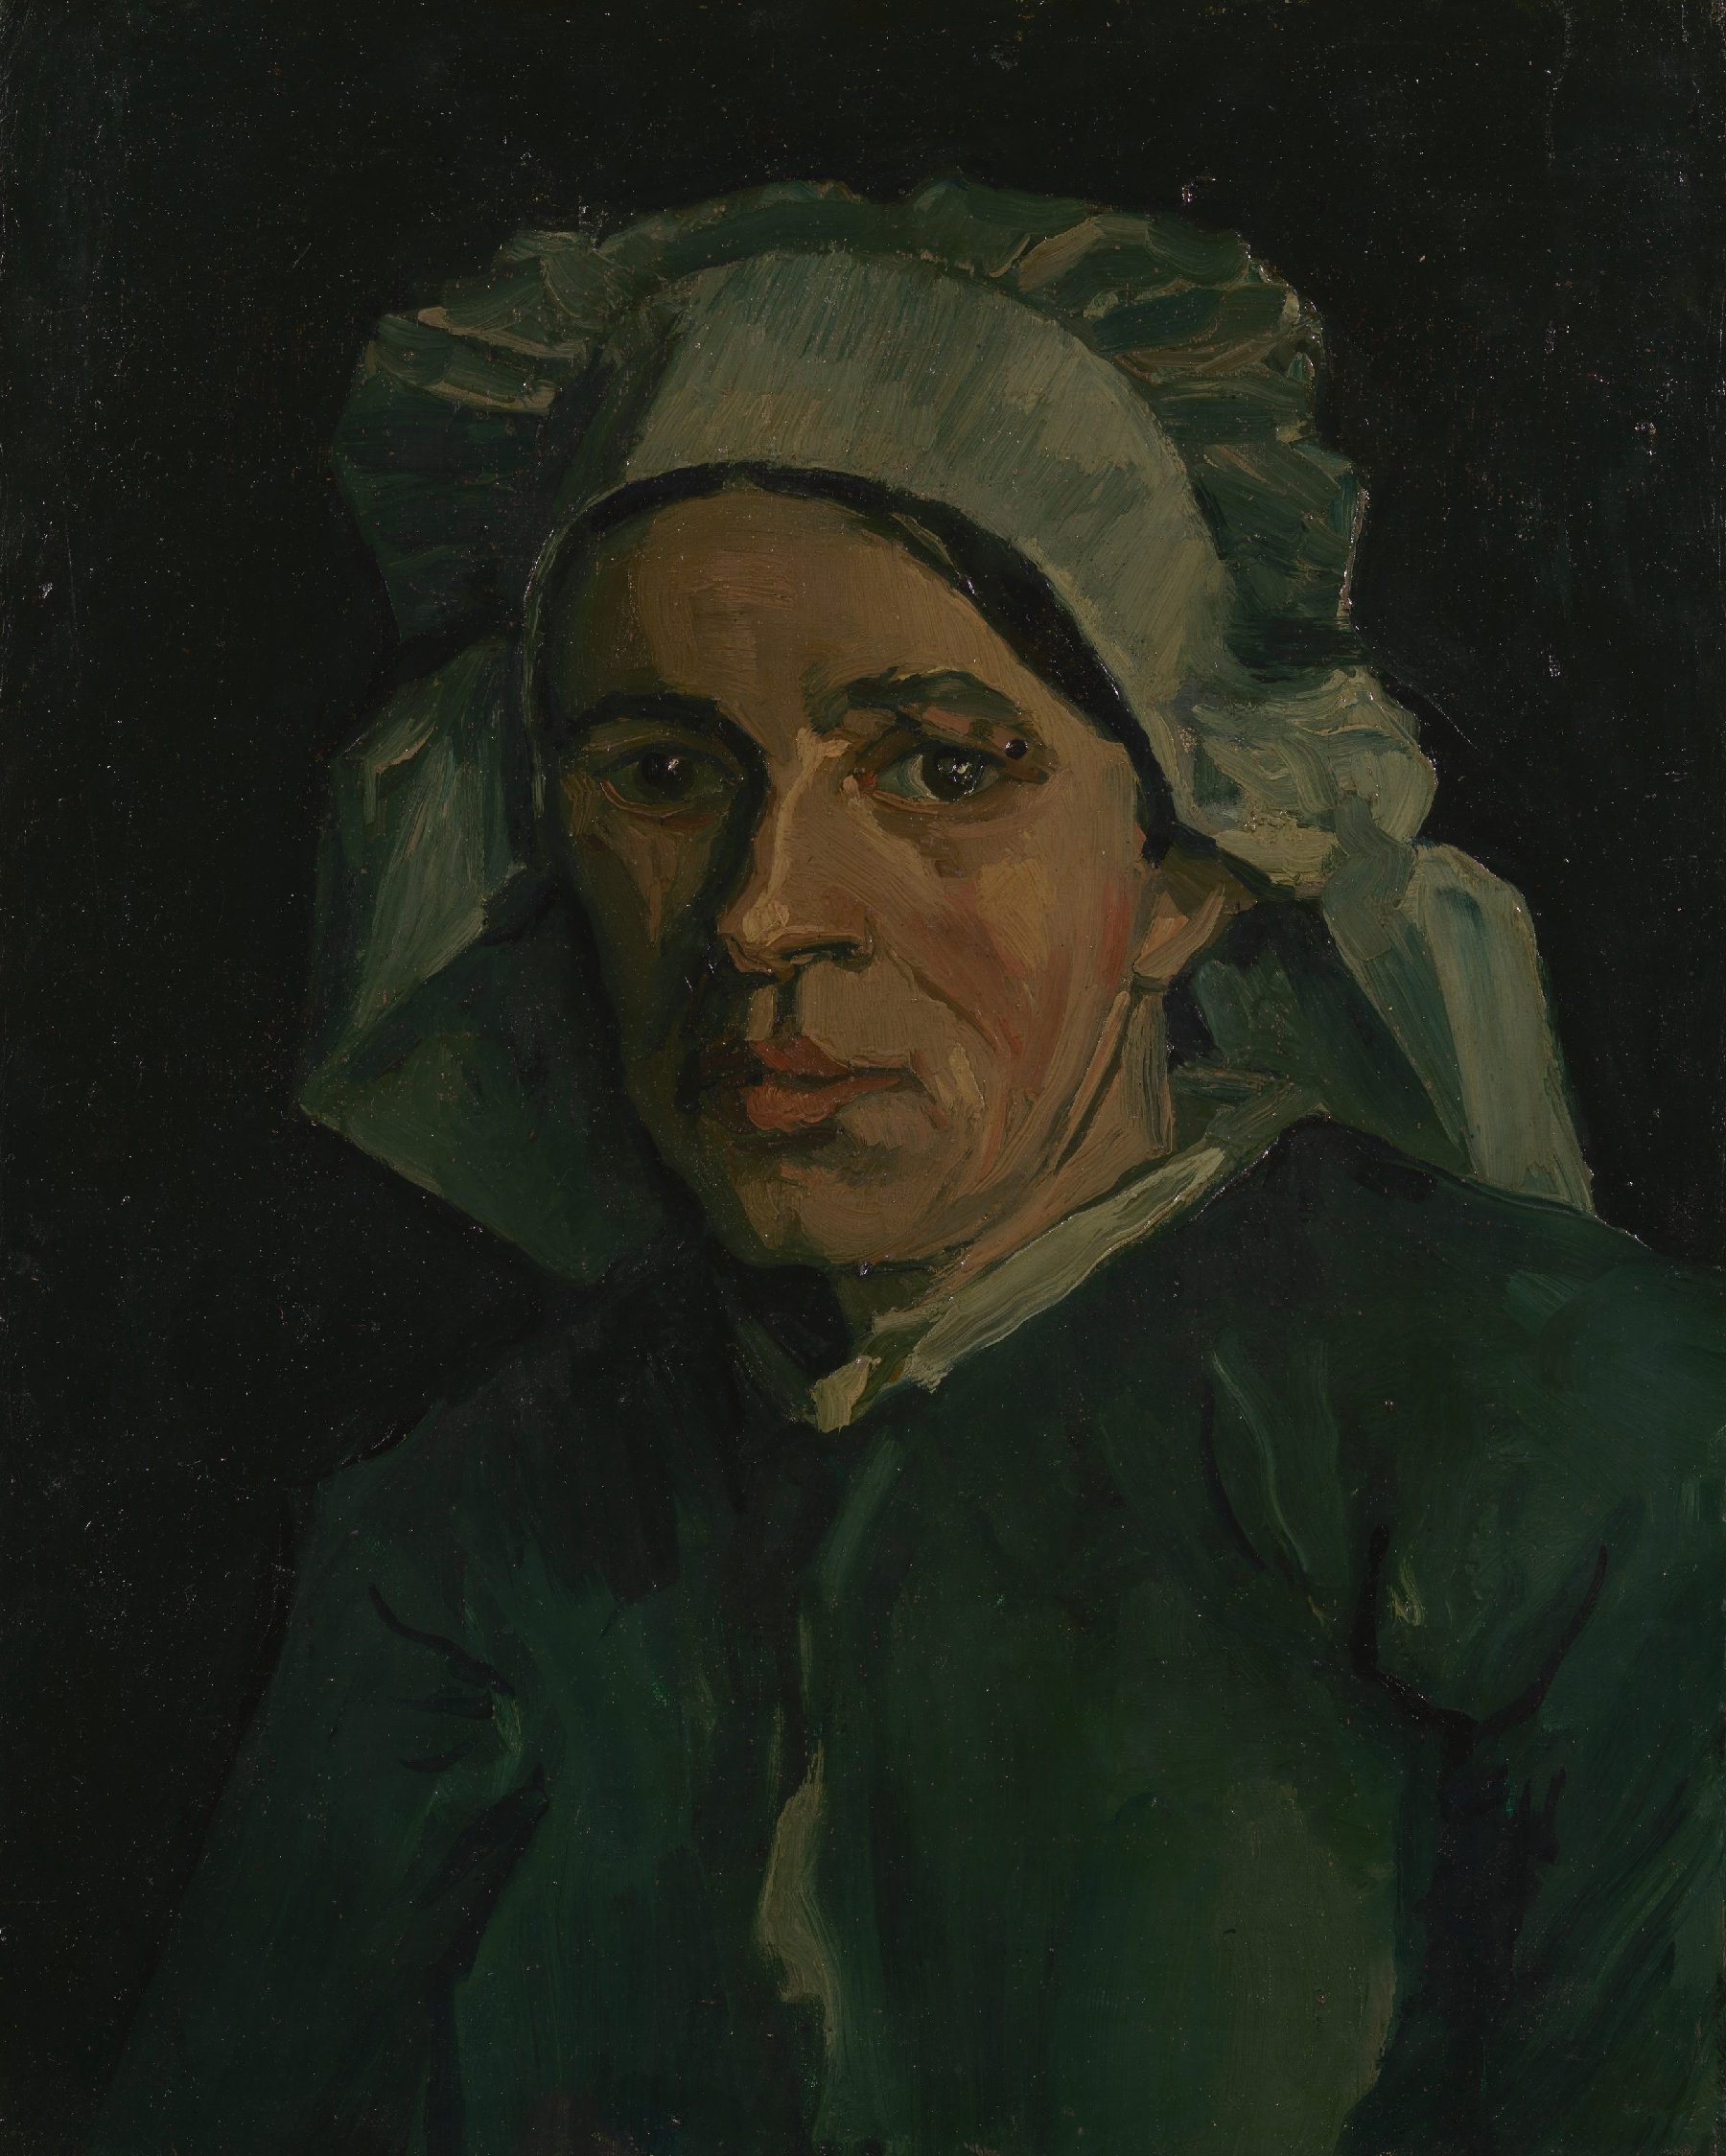 Kop van een vrouw Vincent van Gogh (1853 - 1890), Nuenen, november 1884-januari 1885